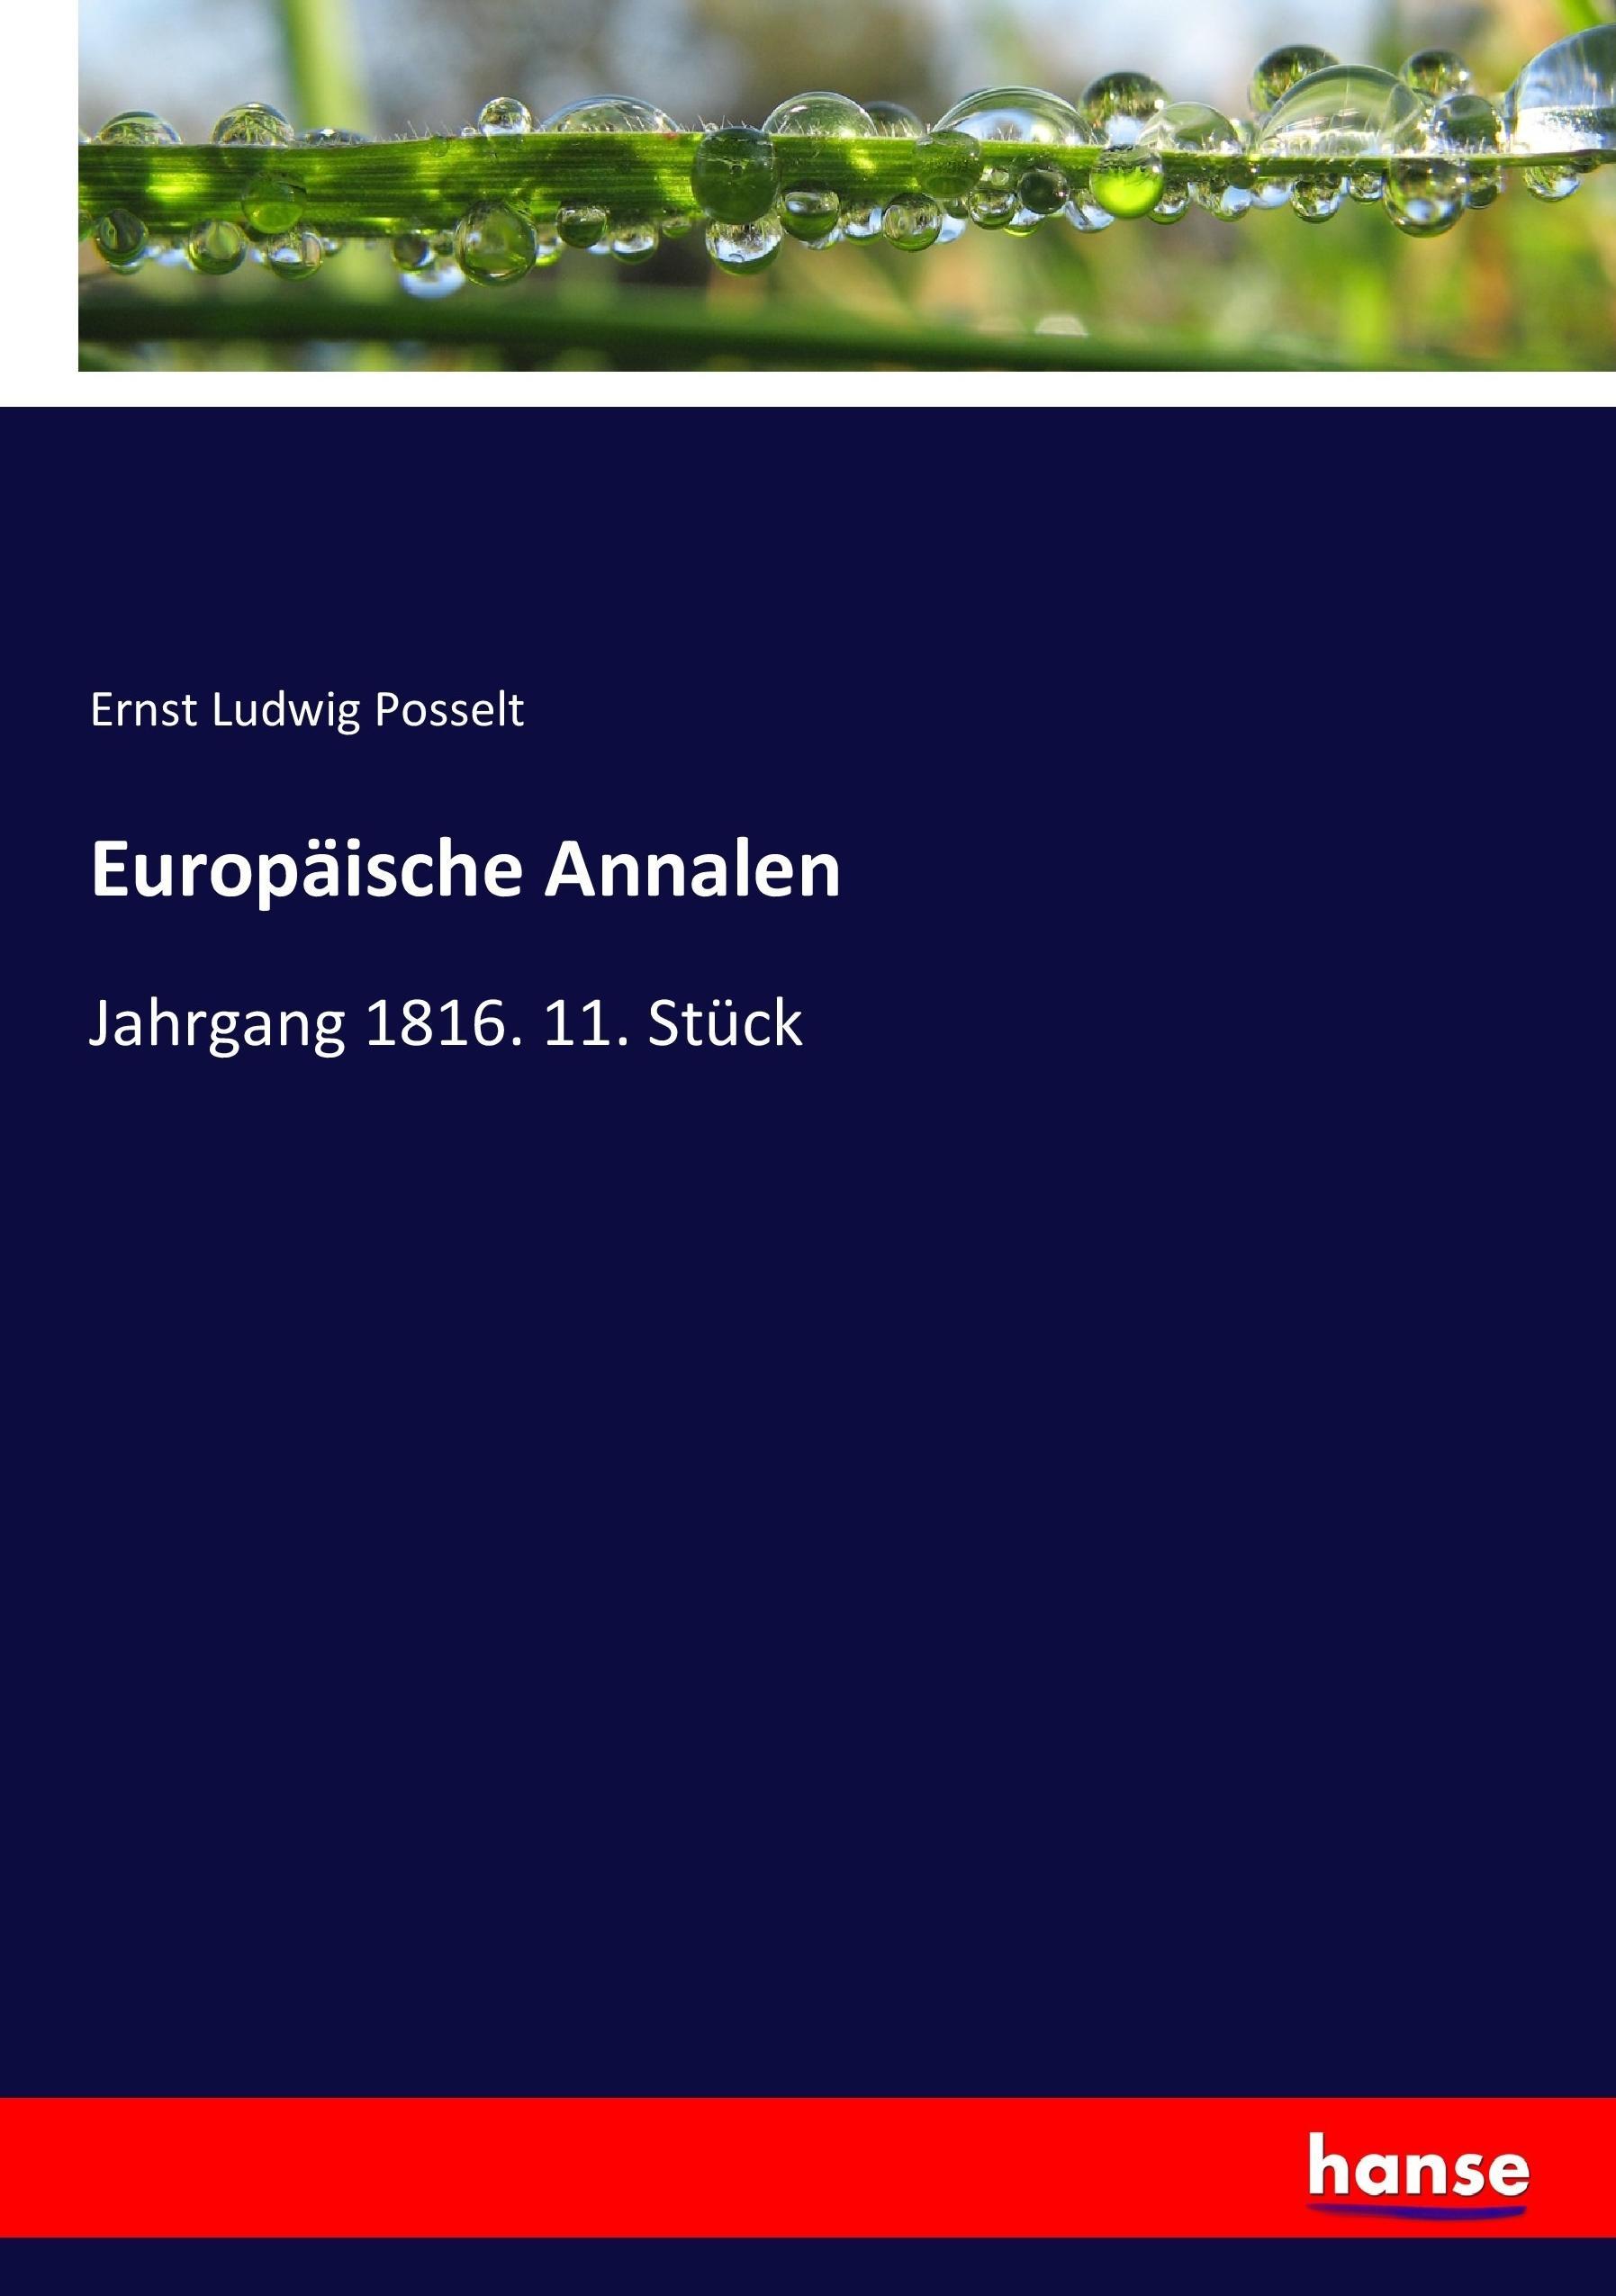 Europäische Annalen | Jahrgang 1816. 11. Stück | Ernst Ludwig Posselt | Taschenbuch | Paperback | 172 S. | Deutsch | 2017 | hansebooks | EAN 9783744684620 - Posselt, Ernst Ludwig